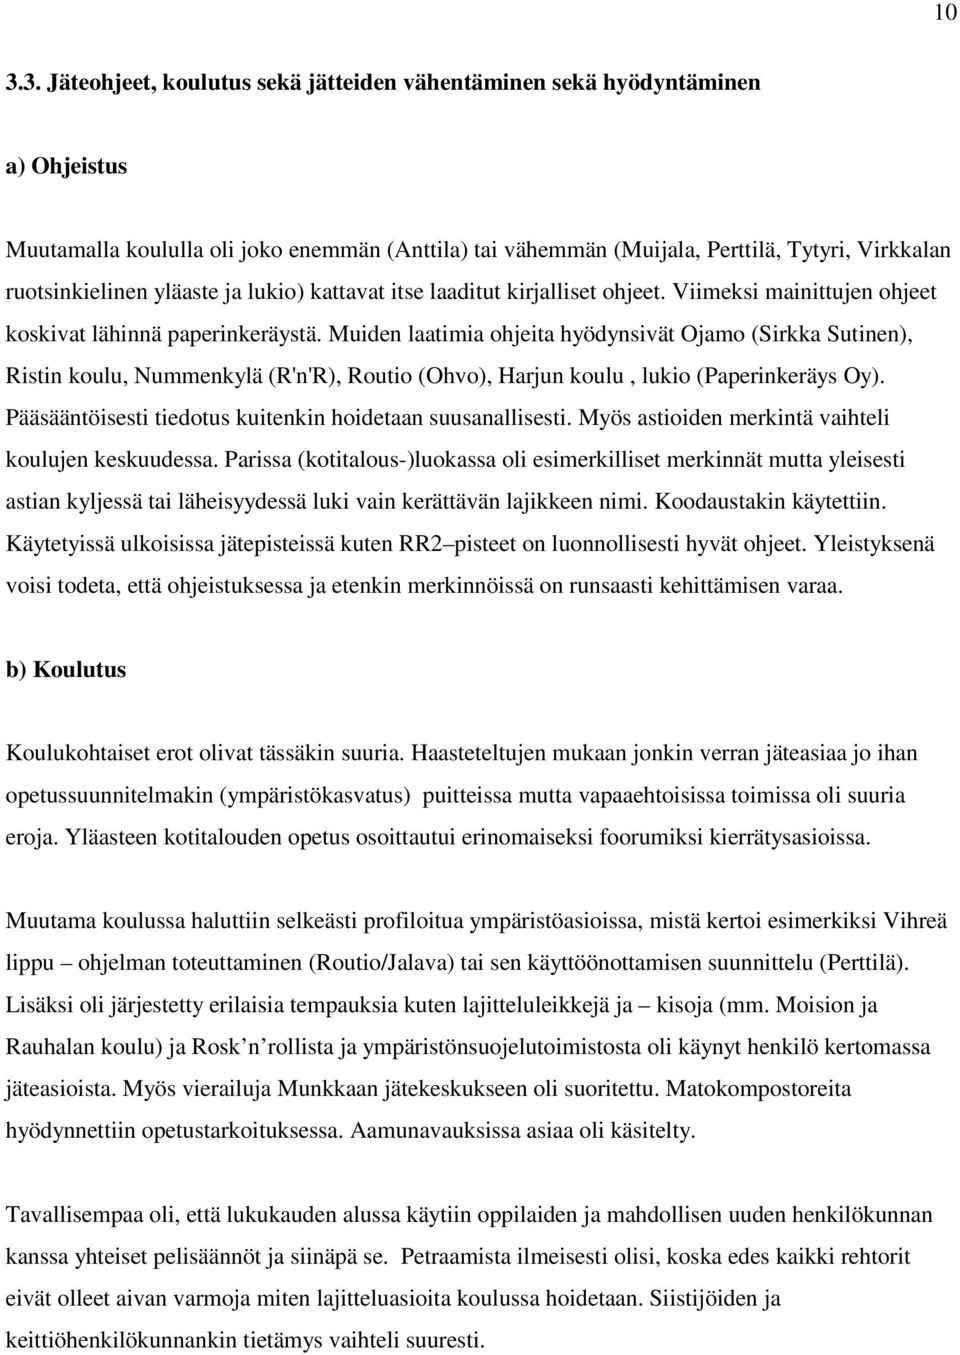 Muiden laatimia ohjeita hyödynsivät Ojamo (Sirkka Sutinen), Ristin koulu, Nummenkylä (R'n'R), Routio (Ohvo), Harjun koulu, lukio (Paperinkeräys Oy).